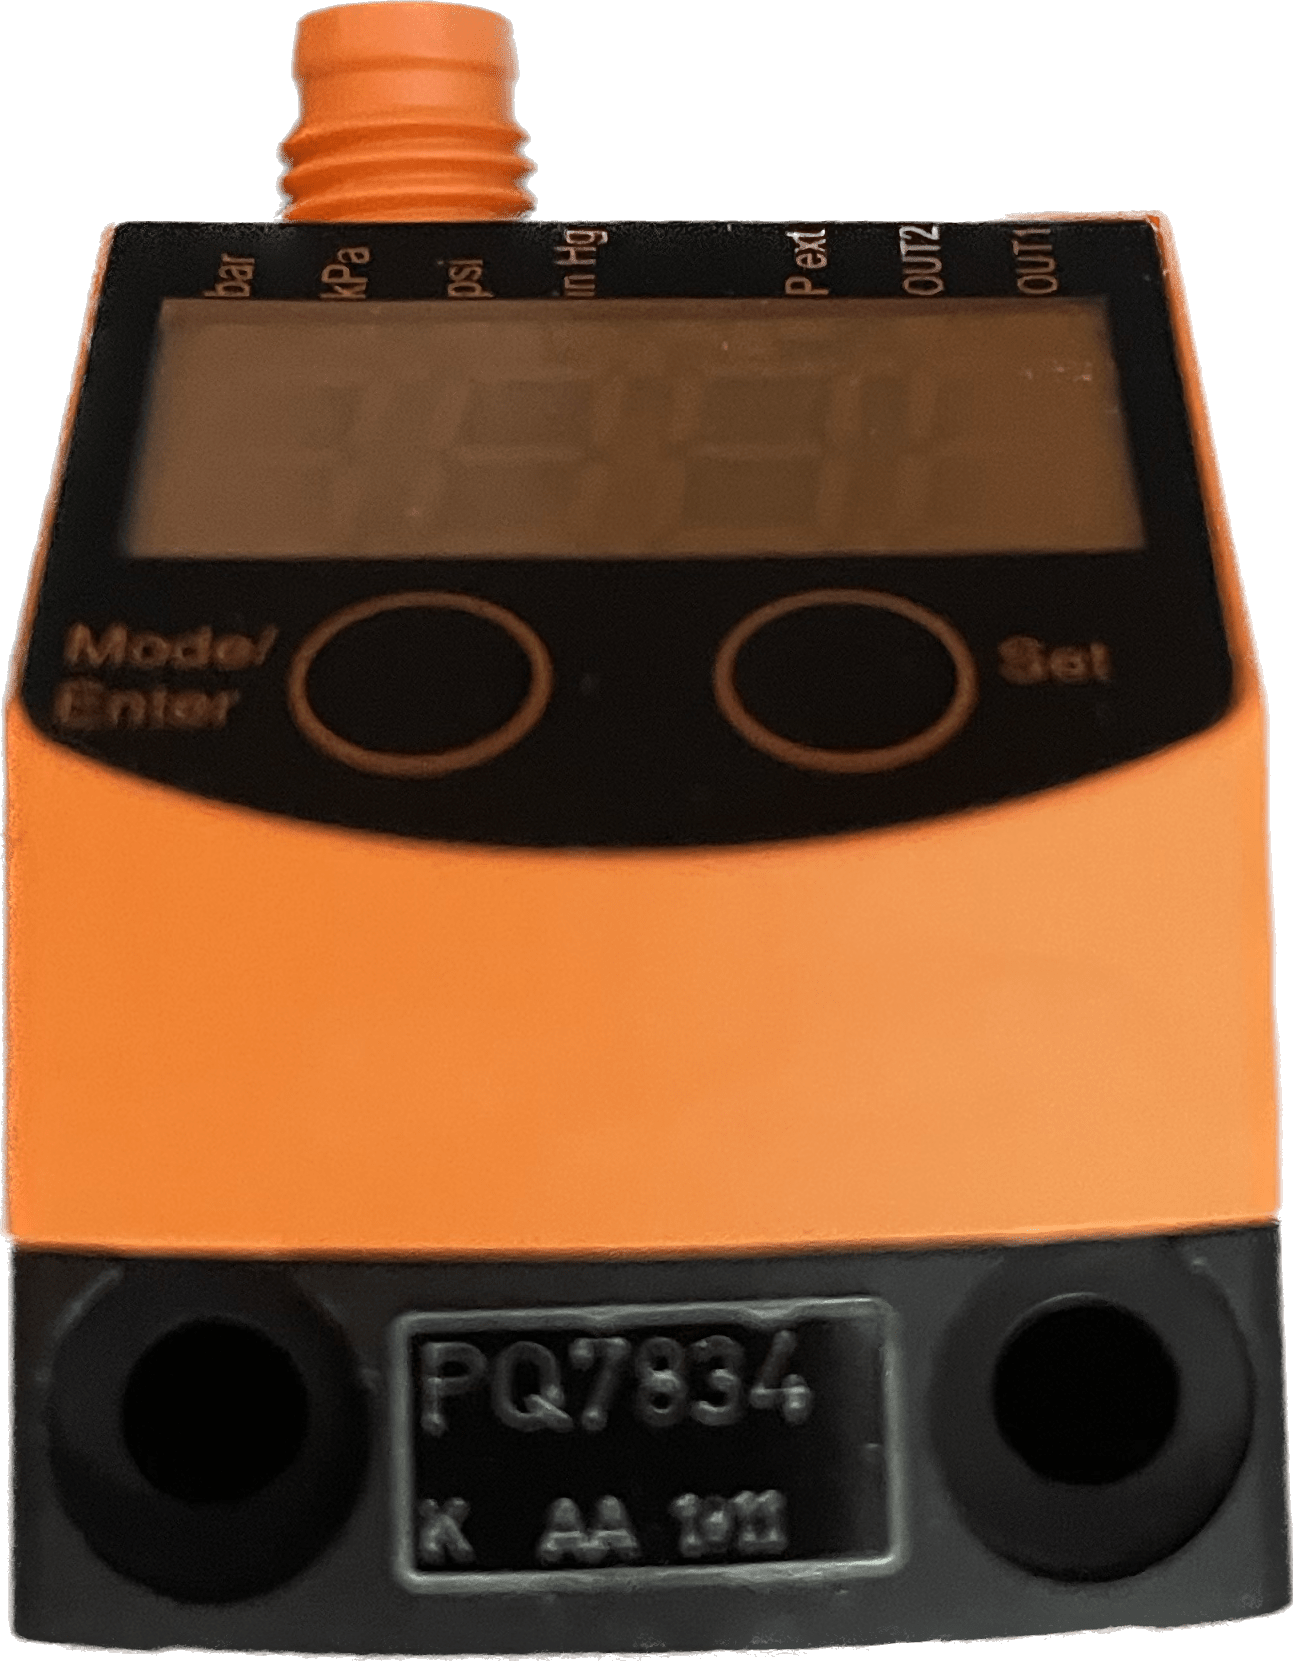 IFM PQ7834 Drucksensor für die Pneumatik - #product_category# | Klenk Maschinenhandel